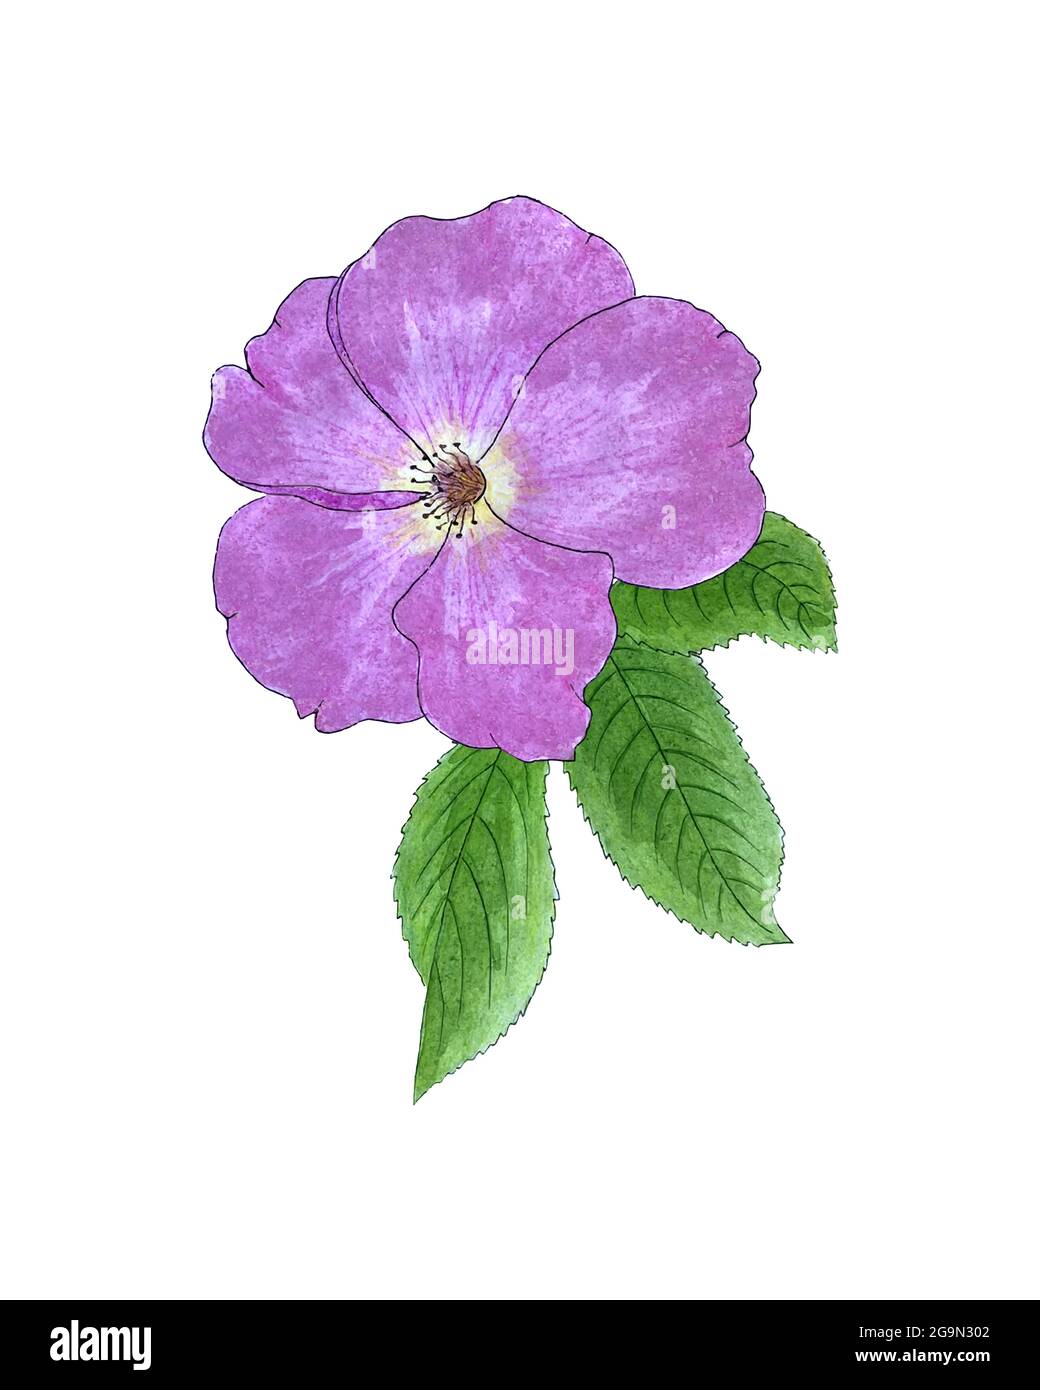 Dessin à la main aquarelle de rosehip, bouton rose avec pétales et feuilles vertes, croquis. Illustration vectorielle Illustration de Vecteur